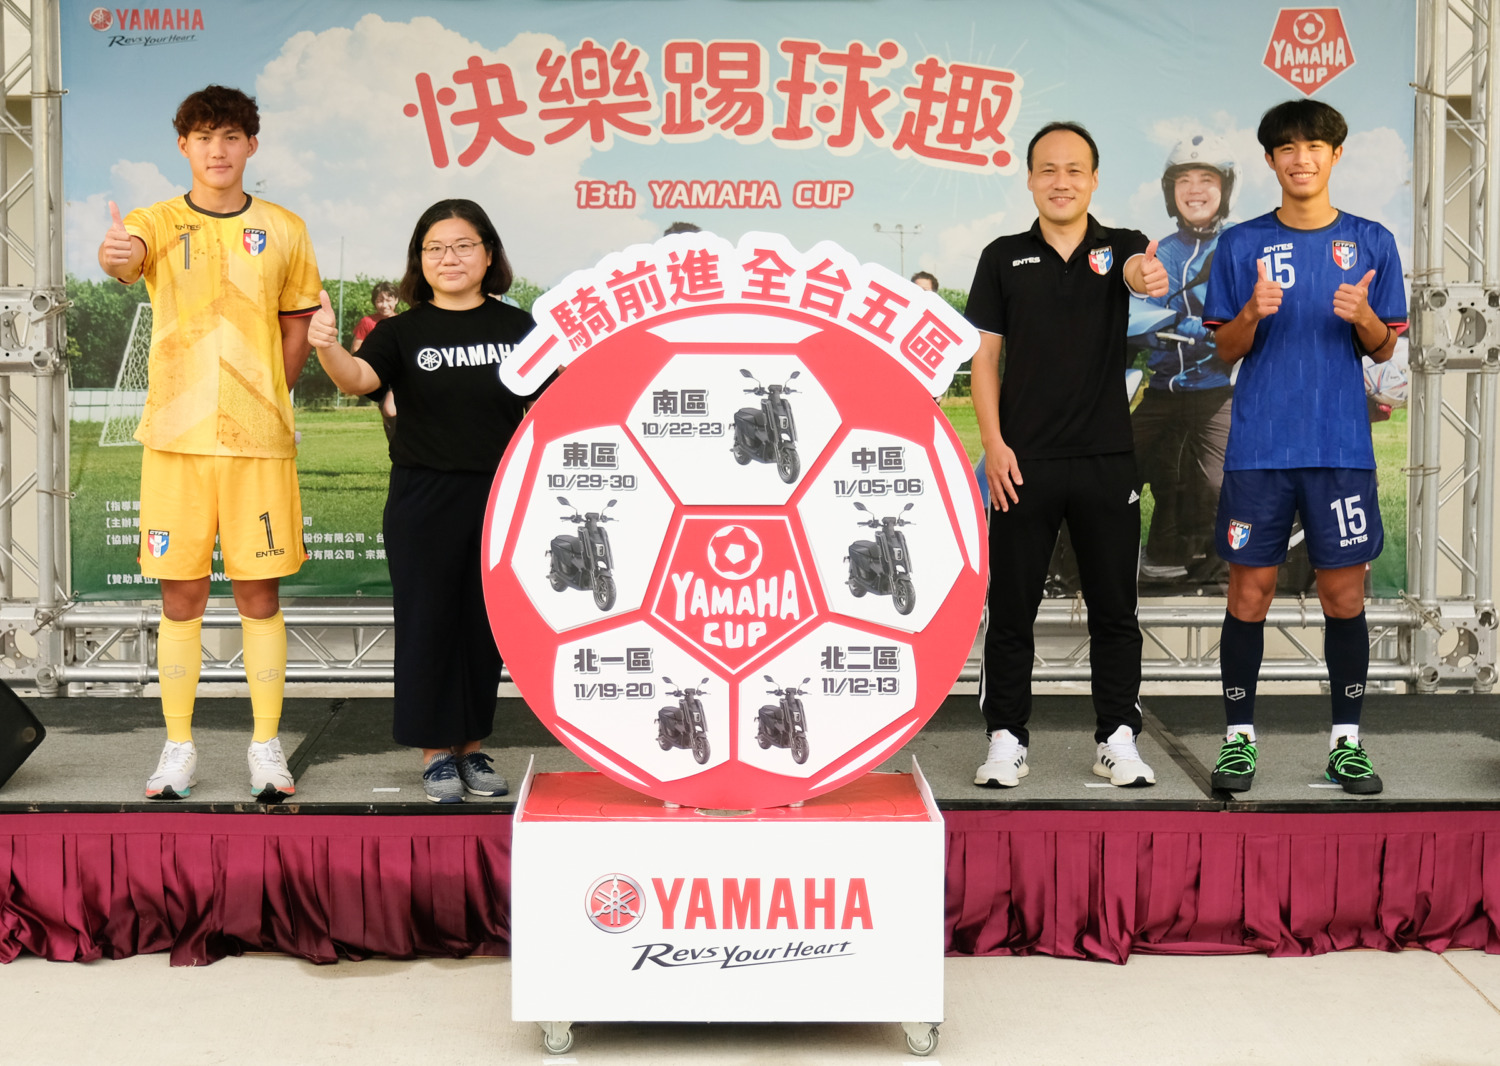 第13屆YAMAHA CUP足球賽一騎前進全台五區 啟用國際專用足球場